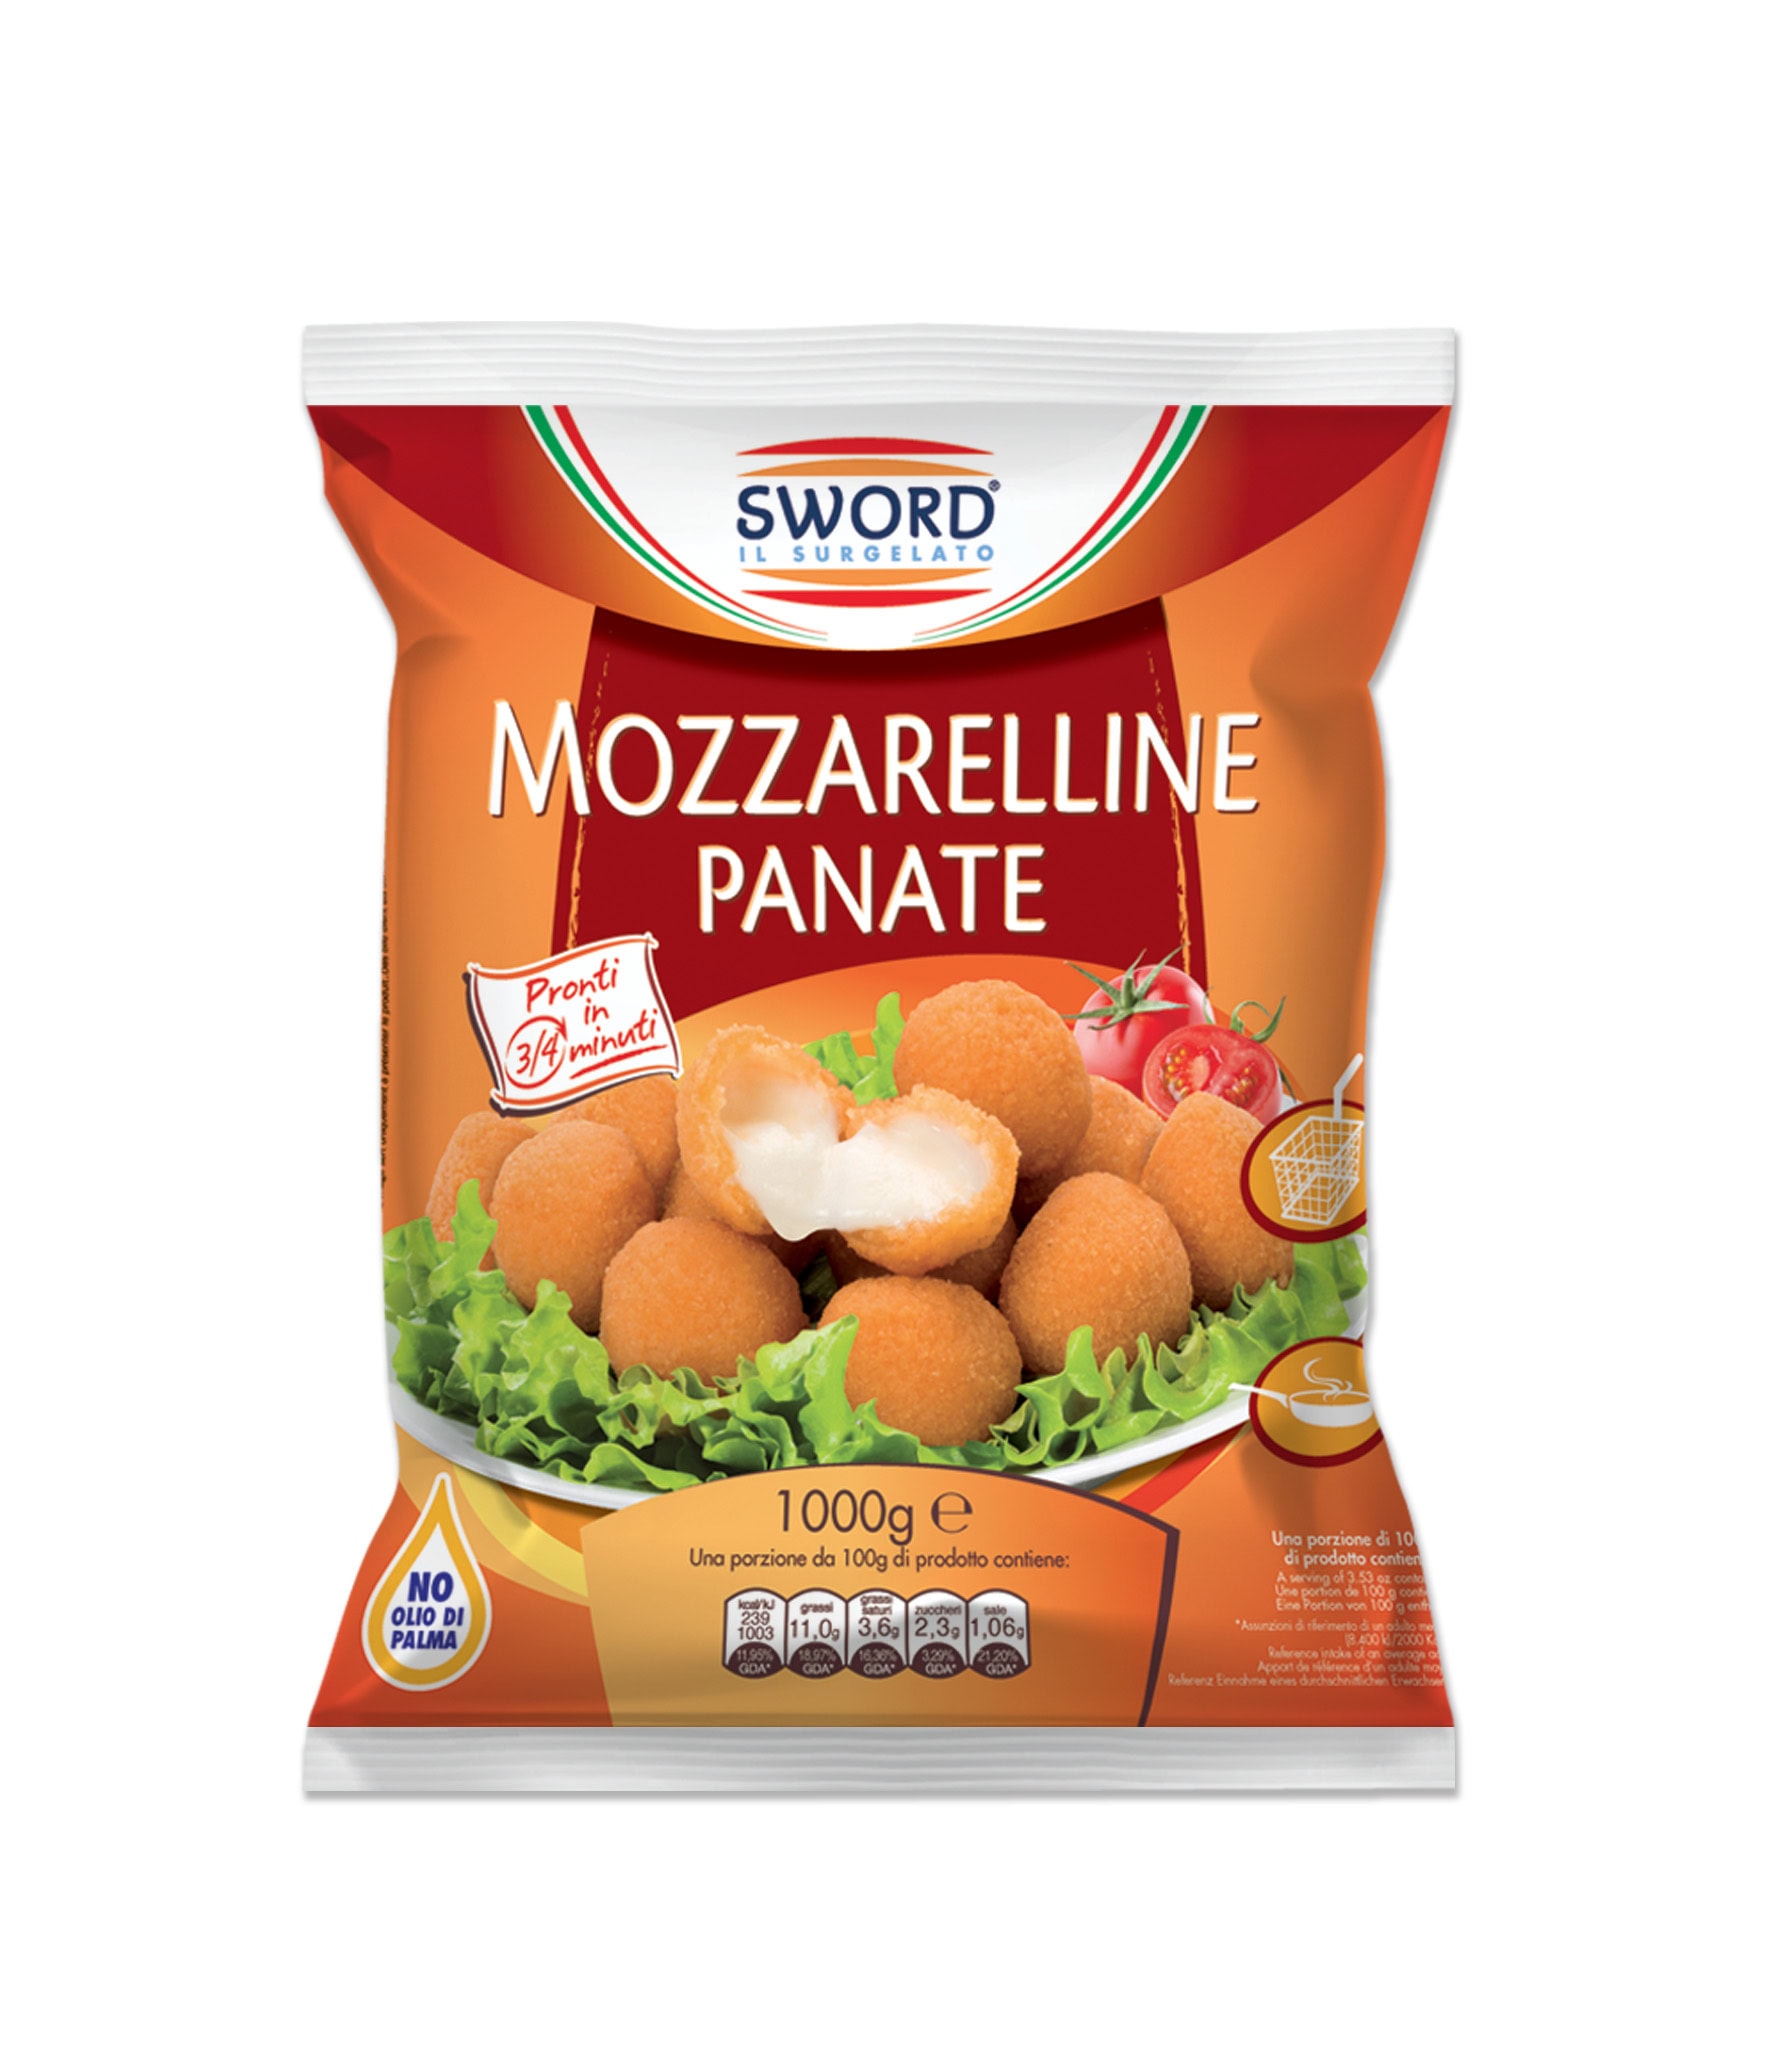 Mozzarelline